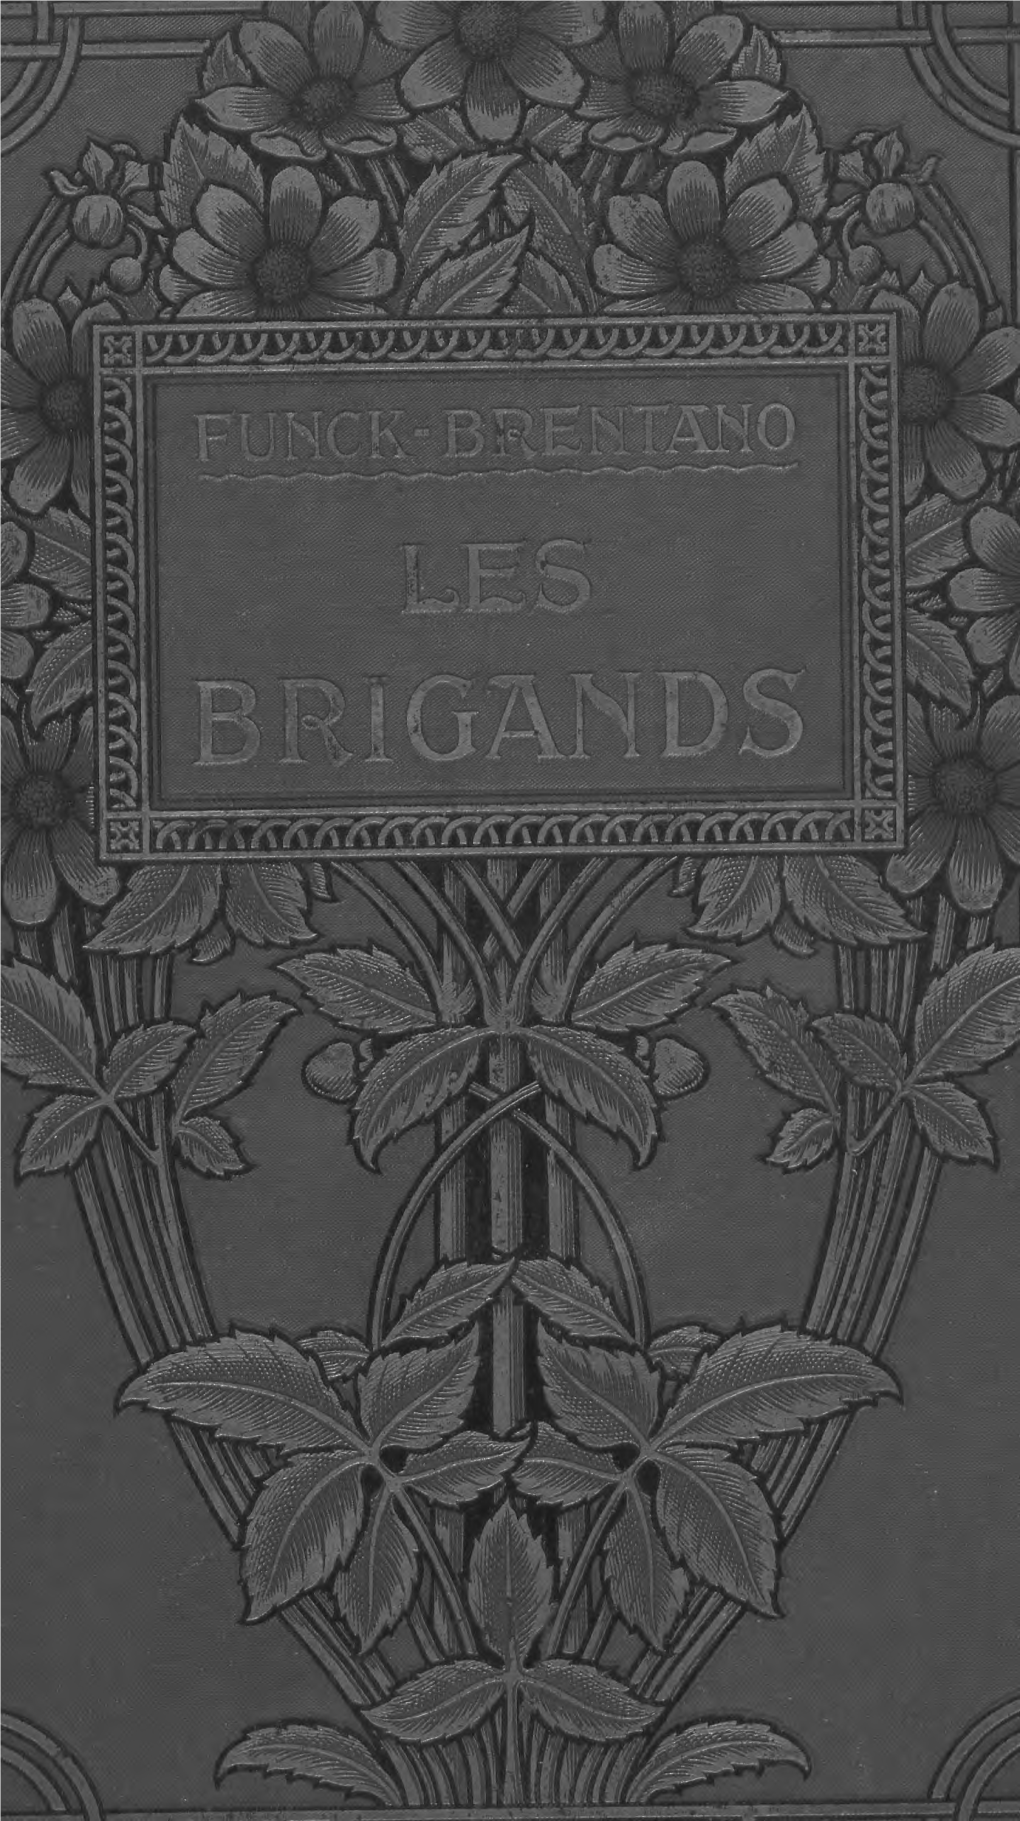 Brigands Les "Brigands